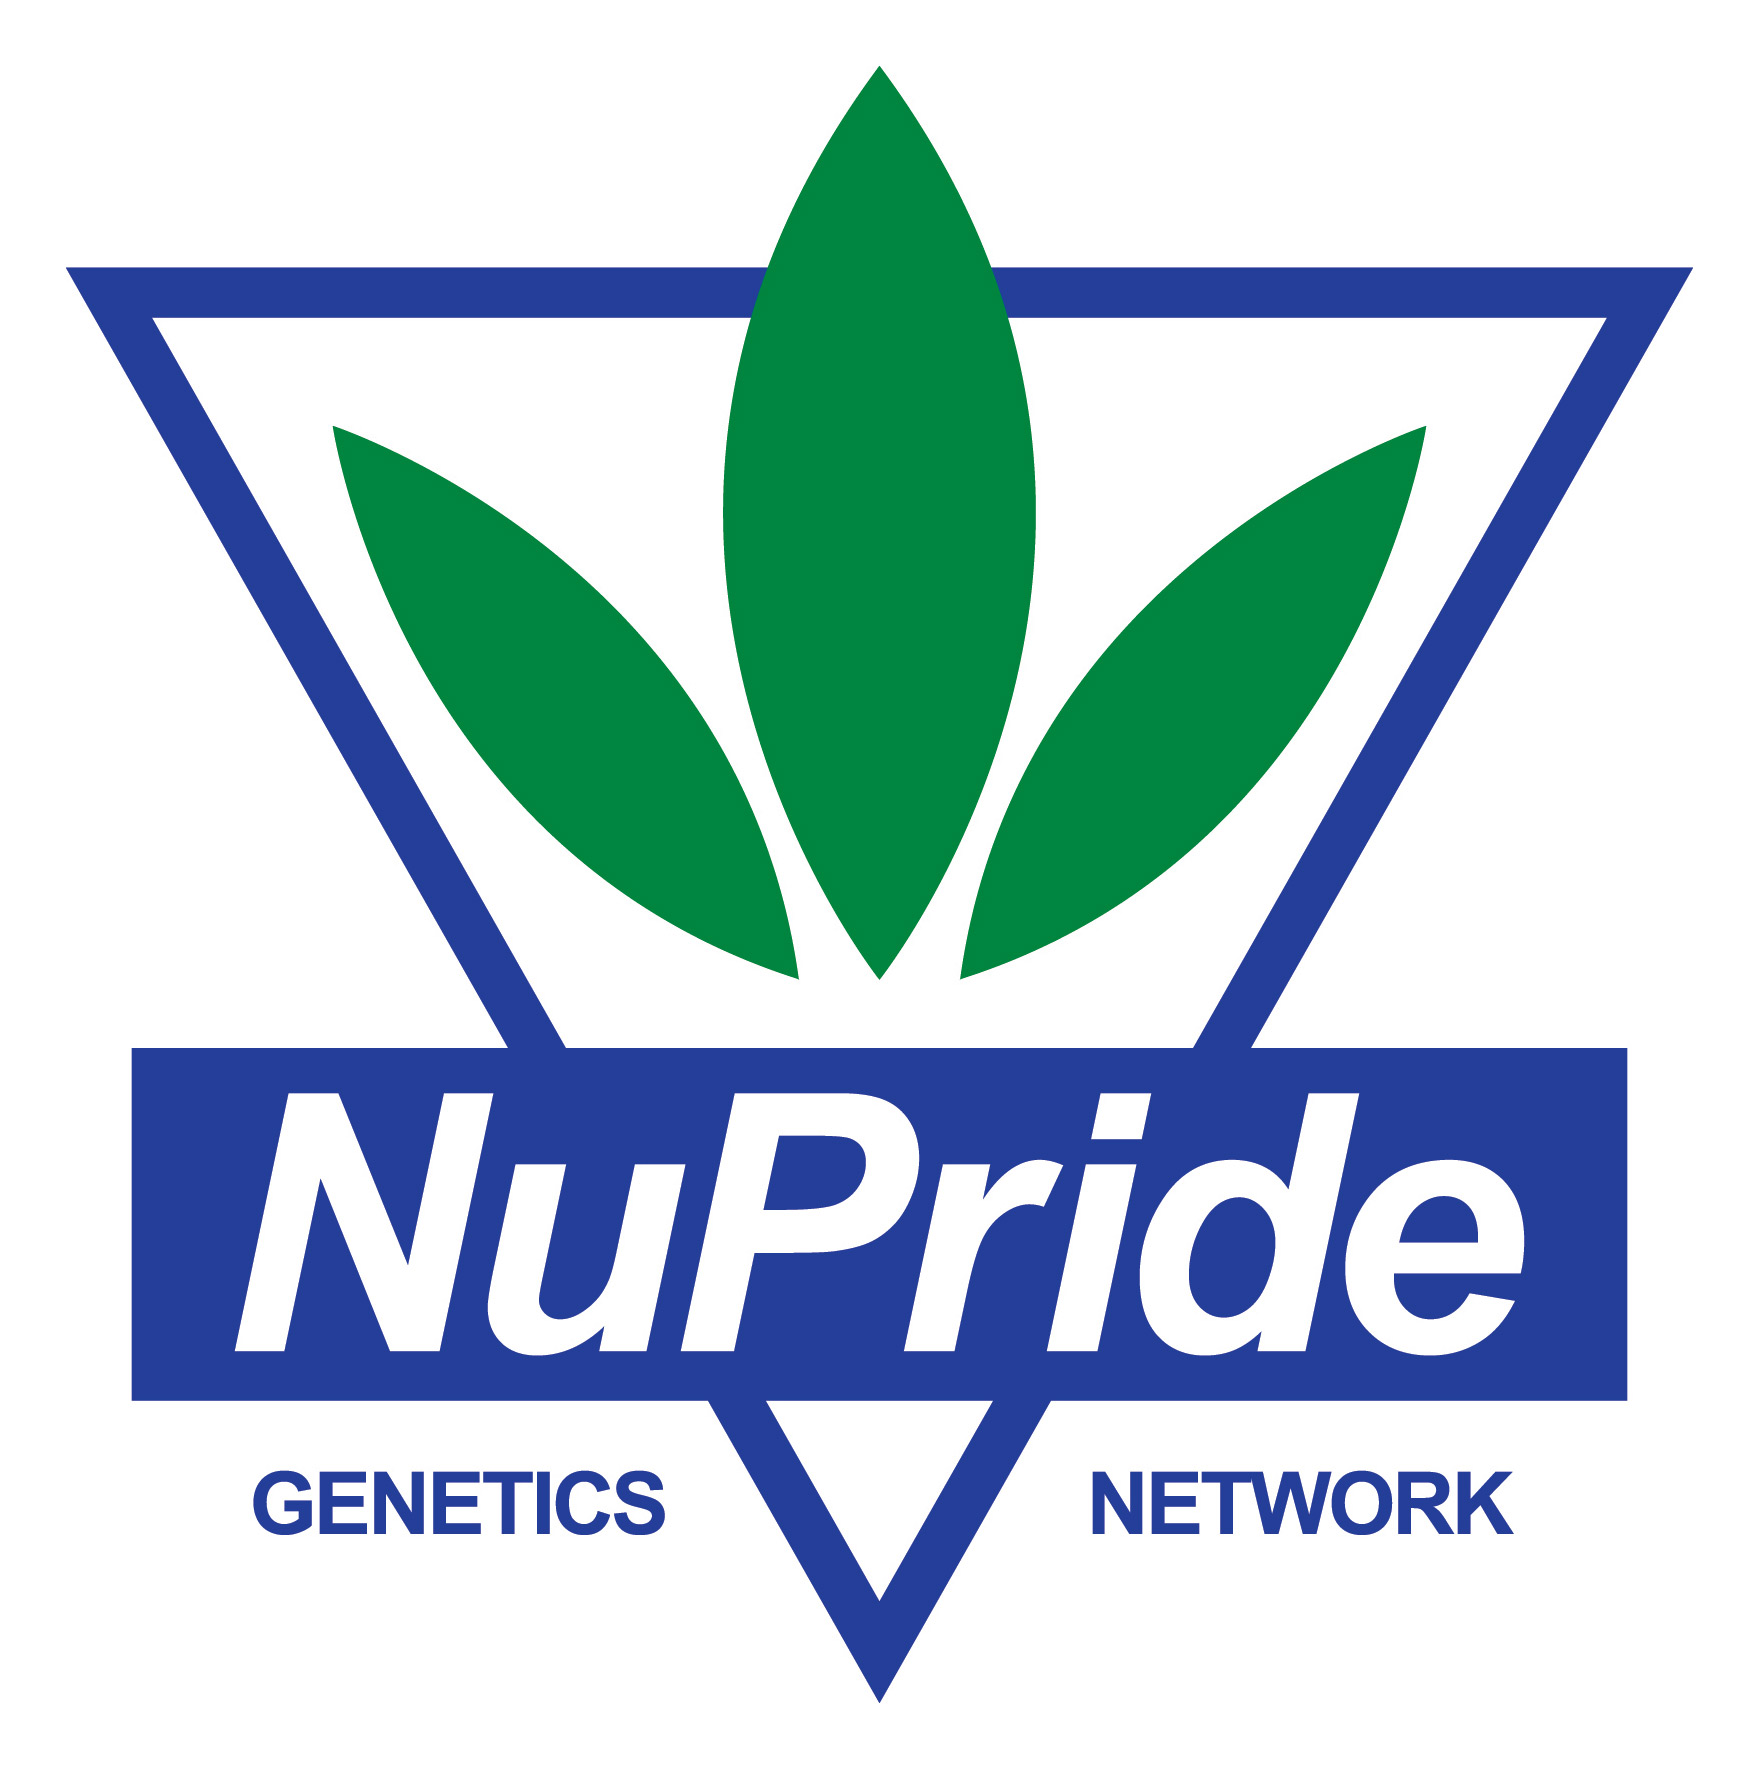 NuPride-genetics-network-logo